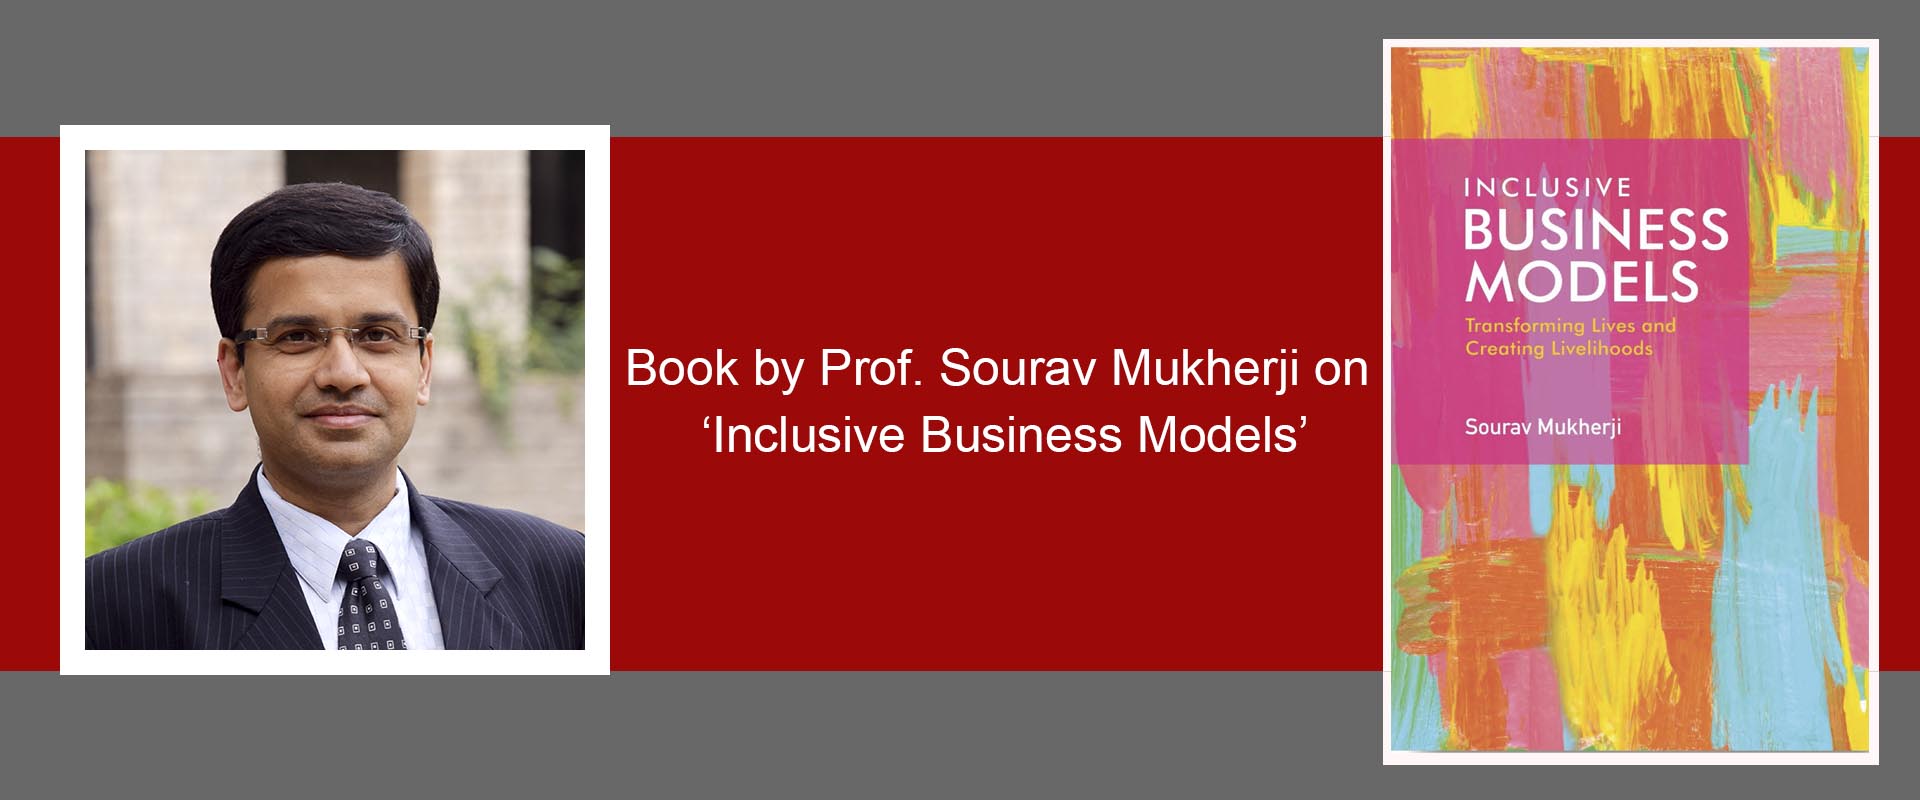 Prof. Sourav Mukherji